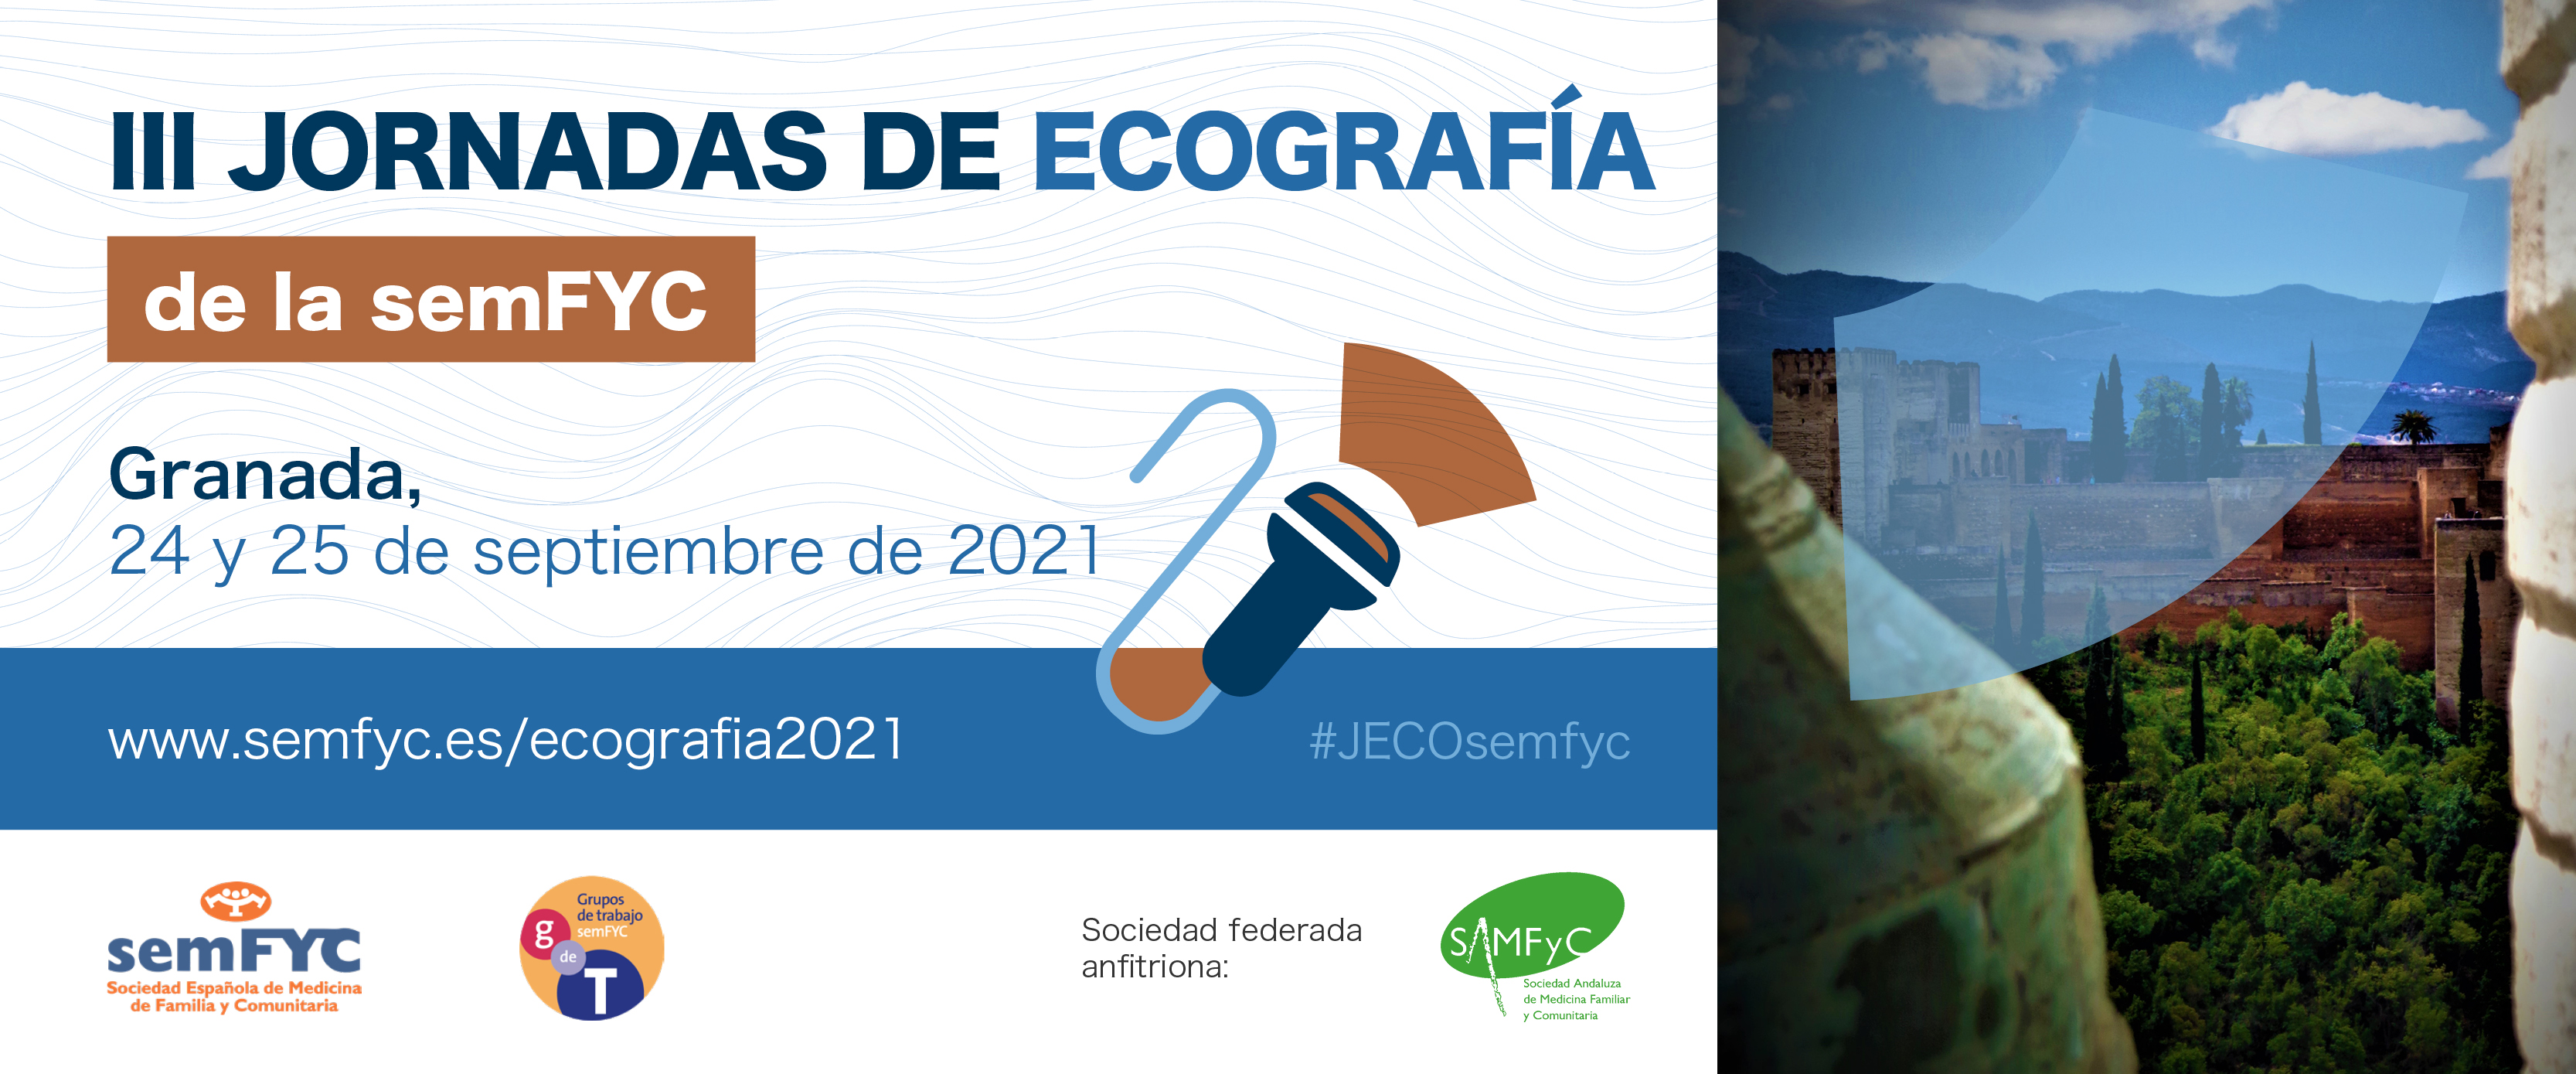 La COVID-19 tendrá un protagonismo especial en las III Jornadas de Ecografía que se celebrarán en Granada